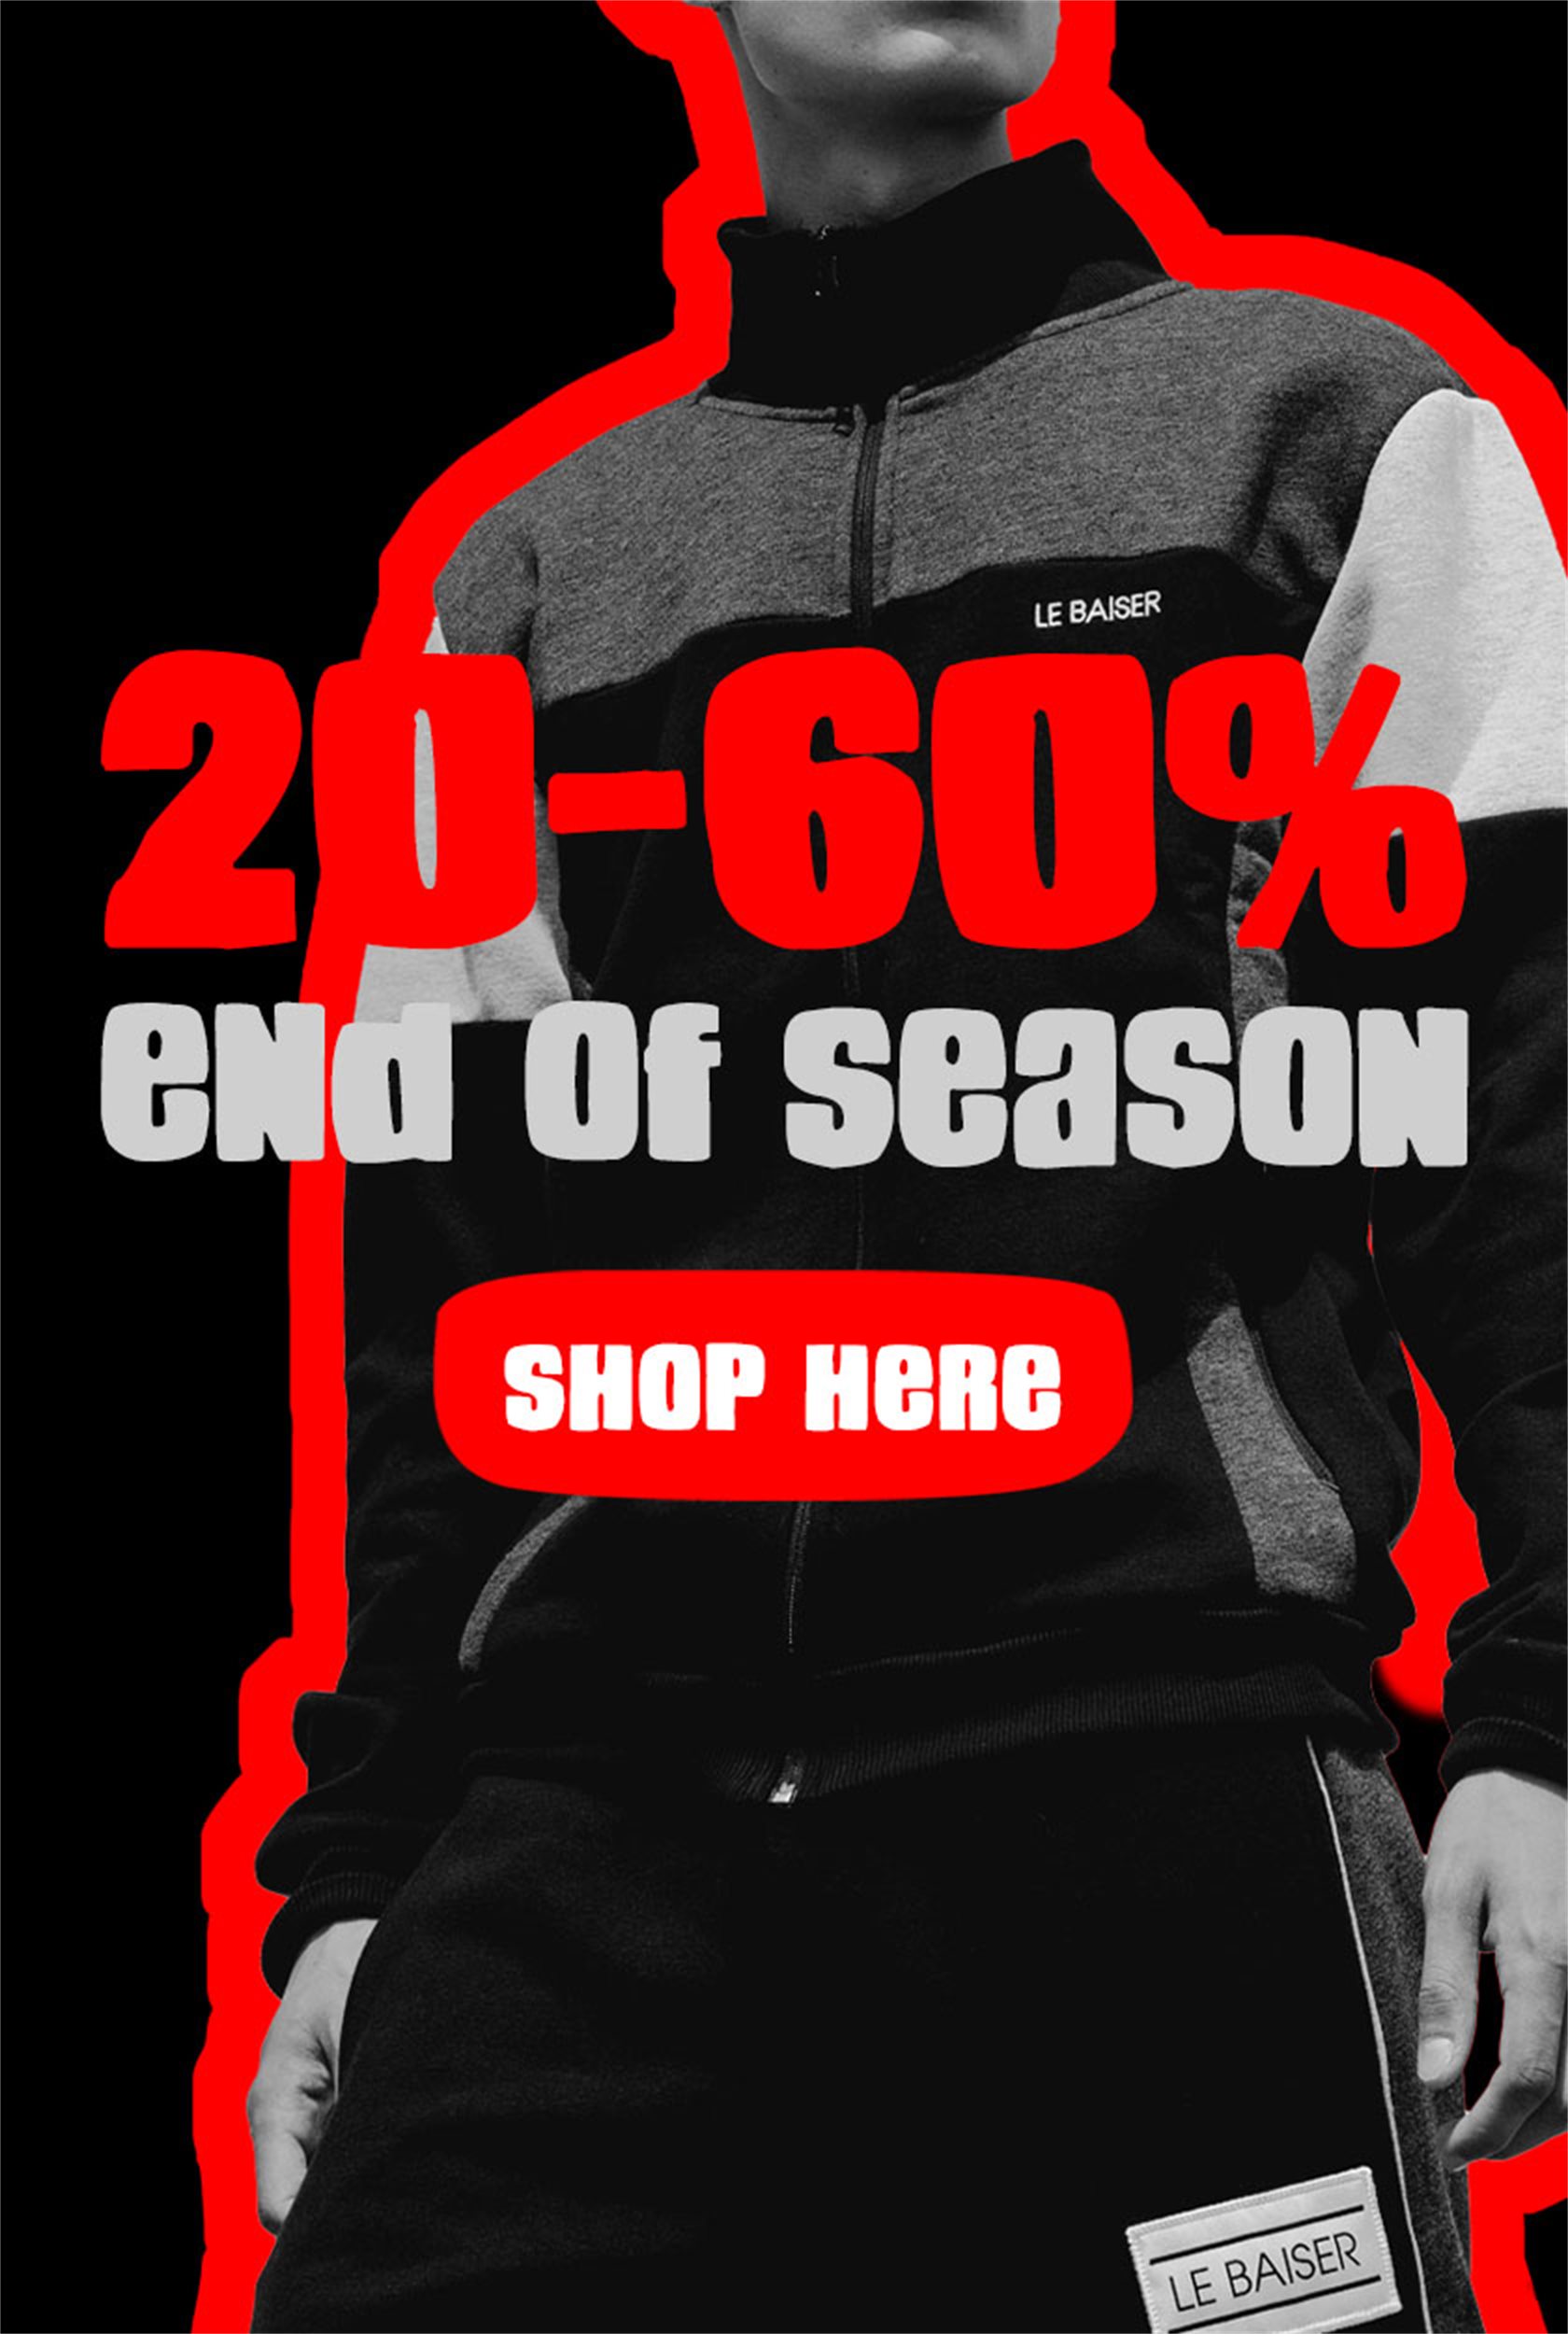 End of Season | 20-60% off